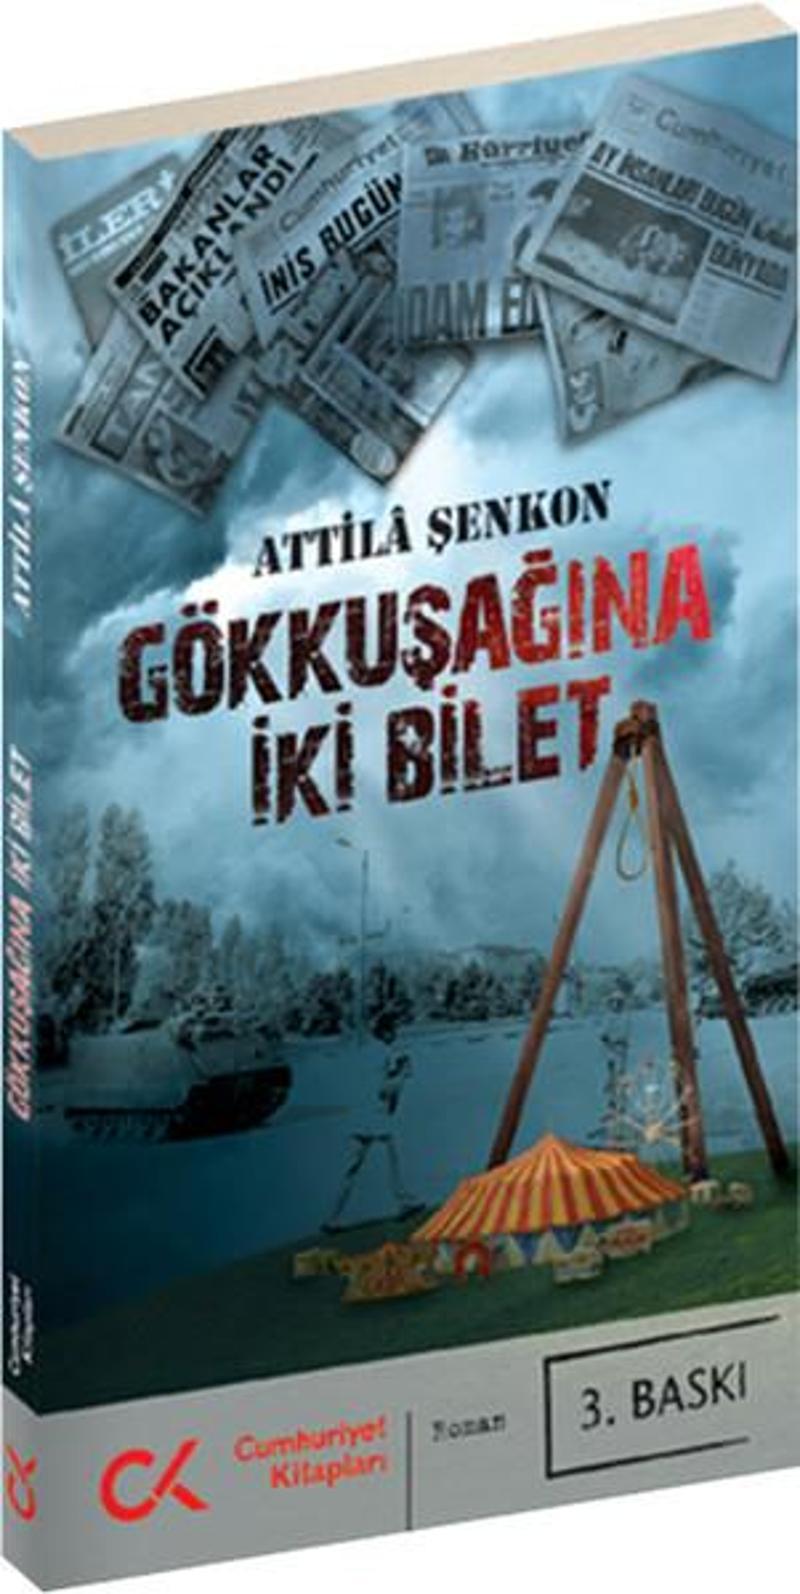 Cumhuriyet Kitapları Gökkuşağına İki Bilet - Attila Şenkon